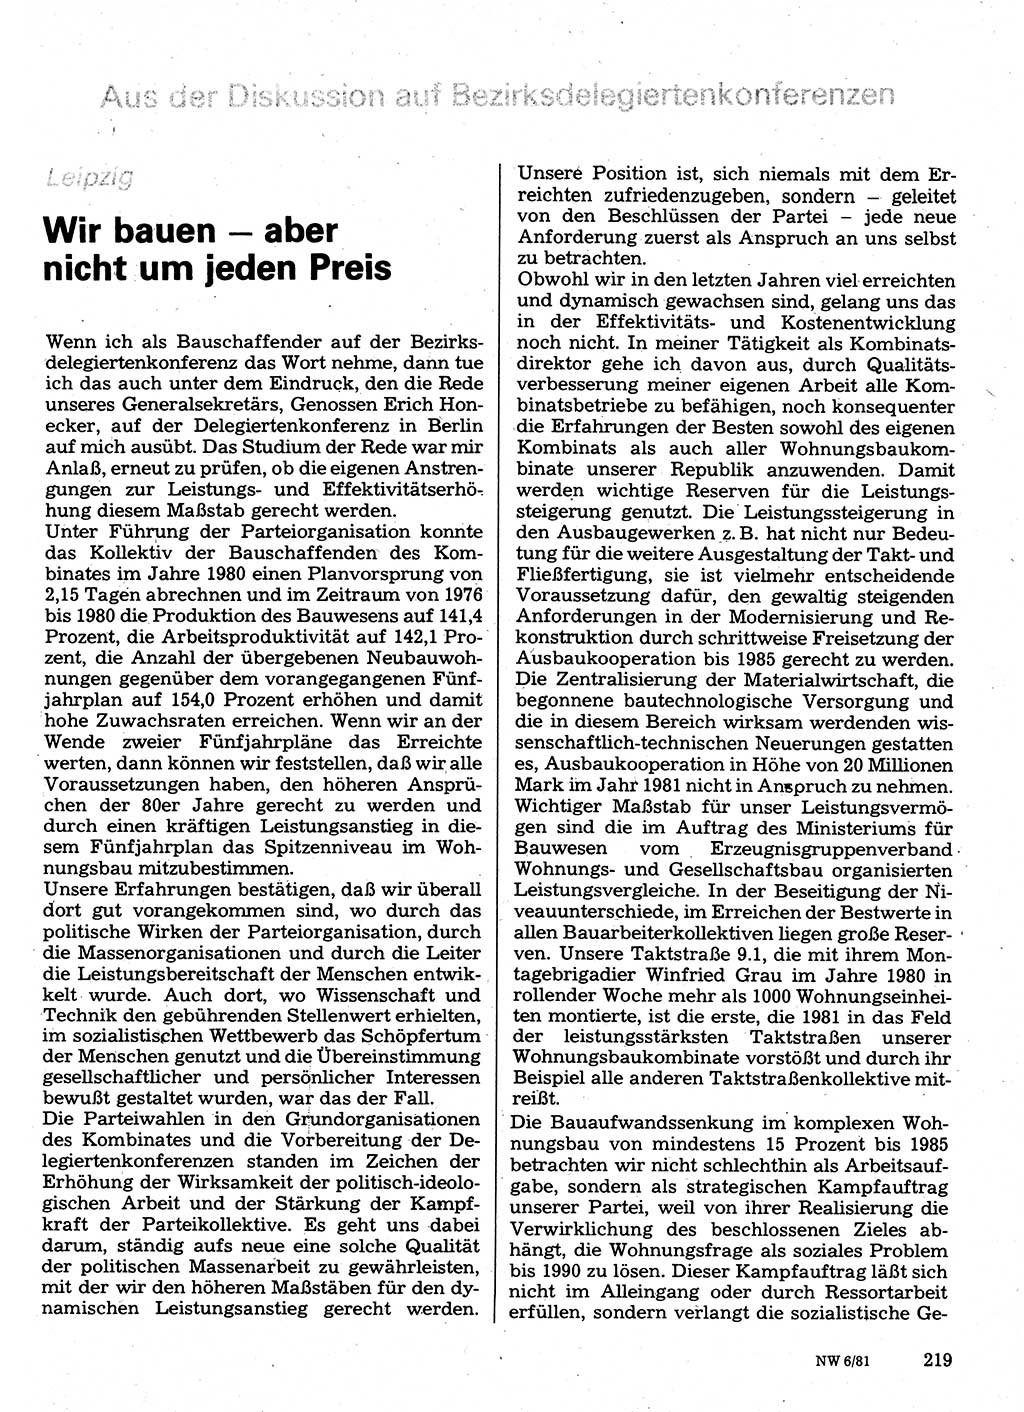 Neuer Weg (NW), Organ des Zentralkomitees (ZK) der SED (Sozialistische Einheitspartei Deutschlands) für Fragen des Parteilebens, 36. Jahrgang [Deutsche Demokratische Republik (DDR)] 1981, Seite 219 (NW ZK SED DDR 1981, S. 219)